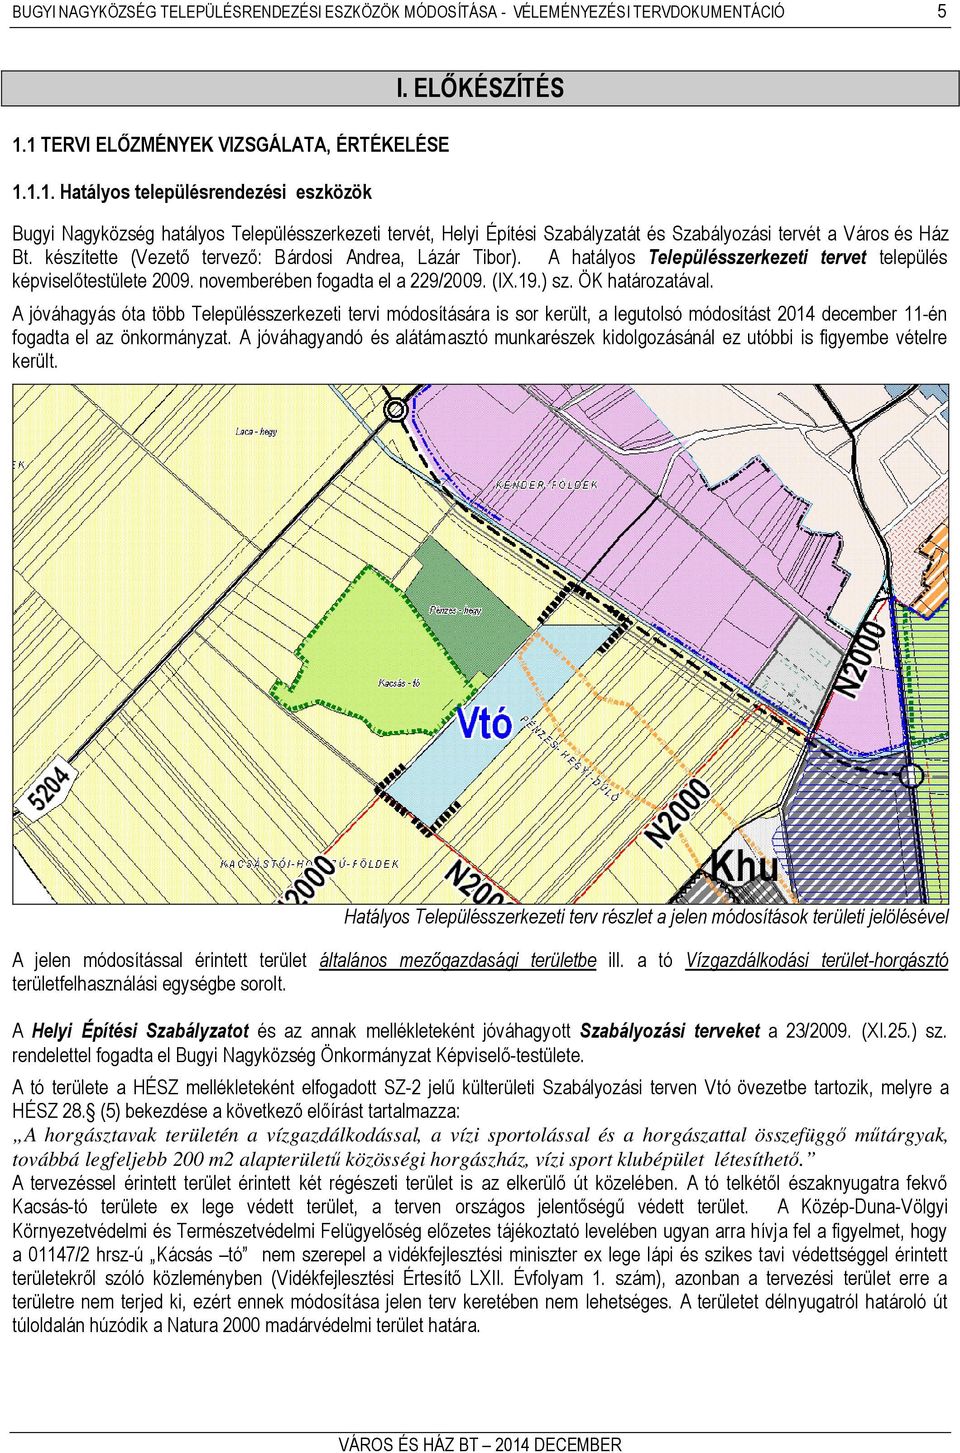 A hatályos Településszerkezeti tervet település képviselőtestülete 2009. novemberében fogadta el a 229/2009. (IX.19.) sz. ÖK határozatával.